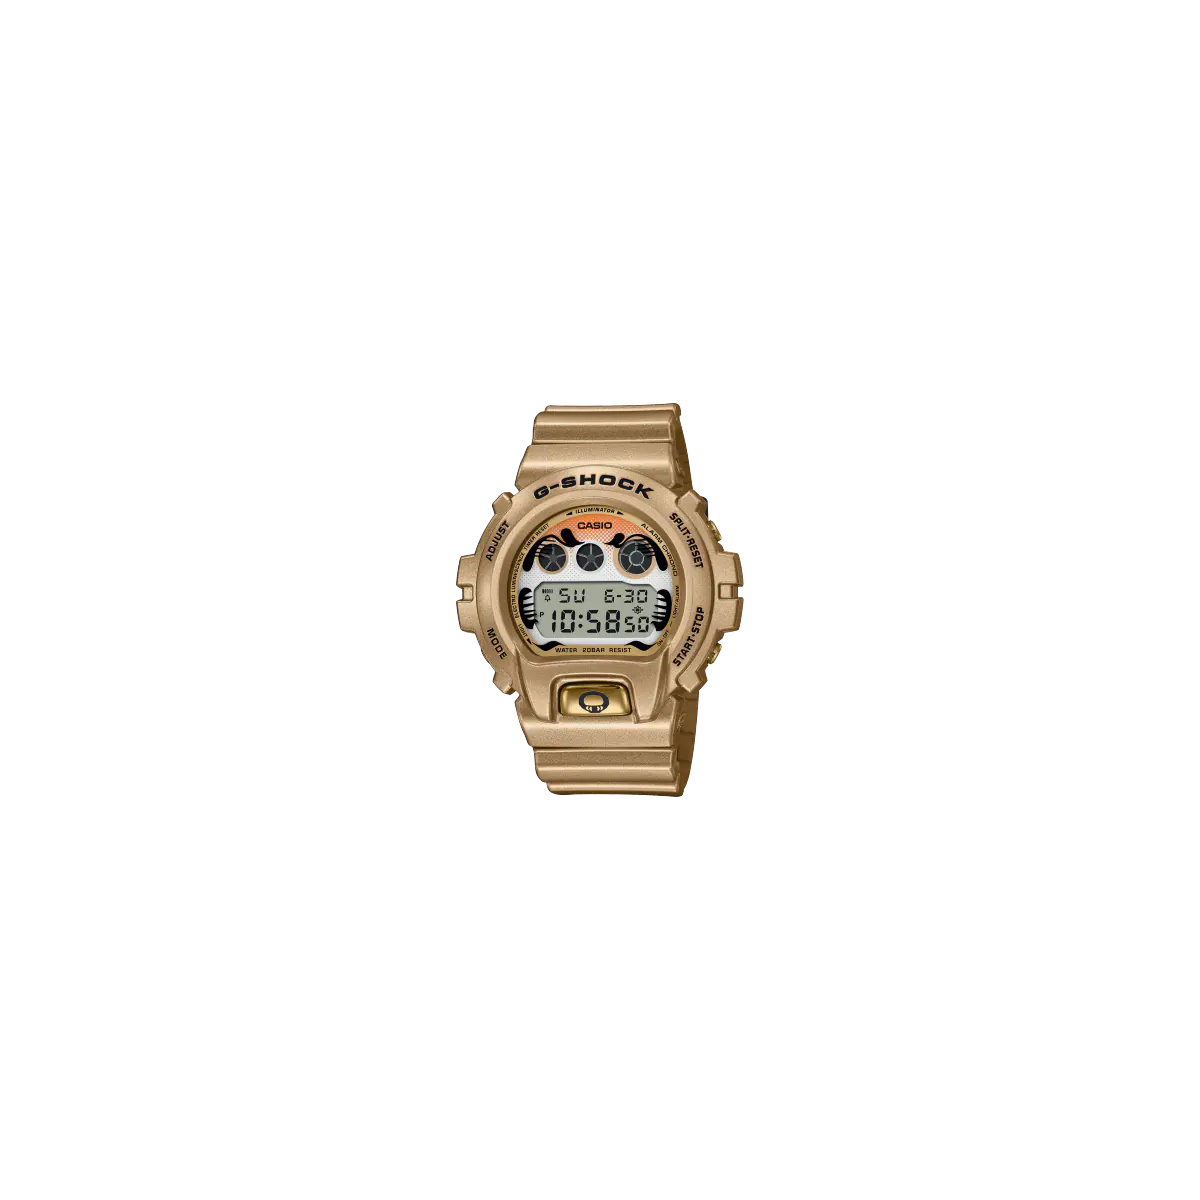 Reloj G-SHOCK Serie DW-6900GDA-9ER